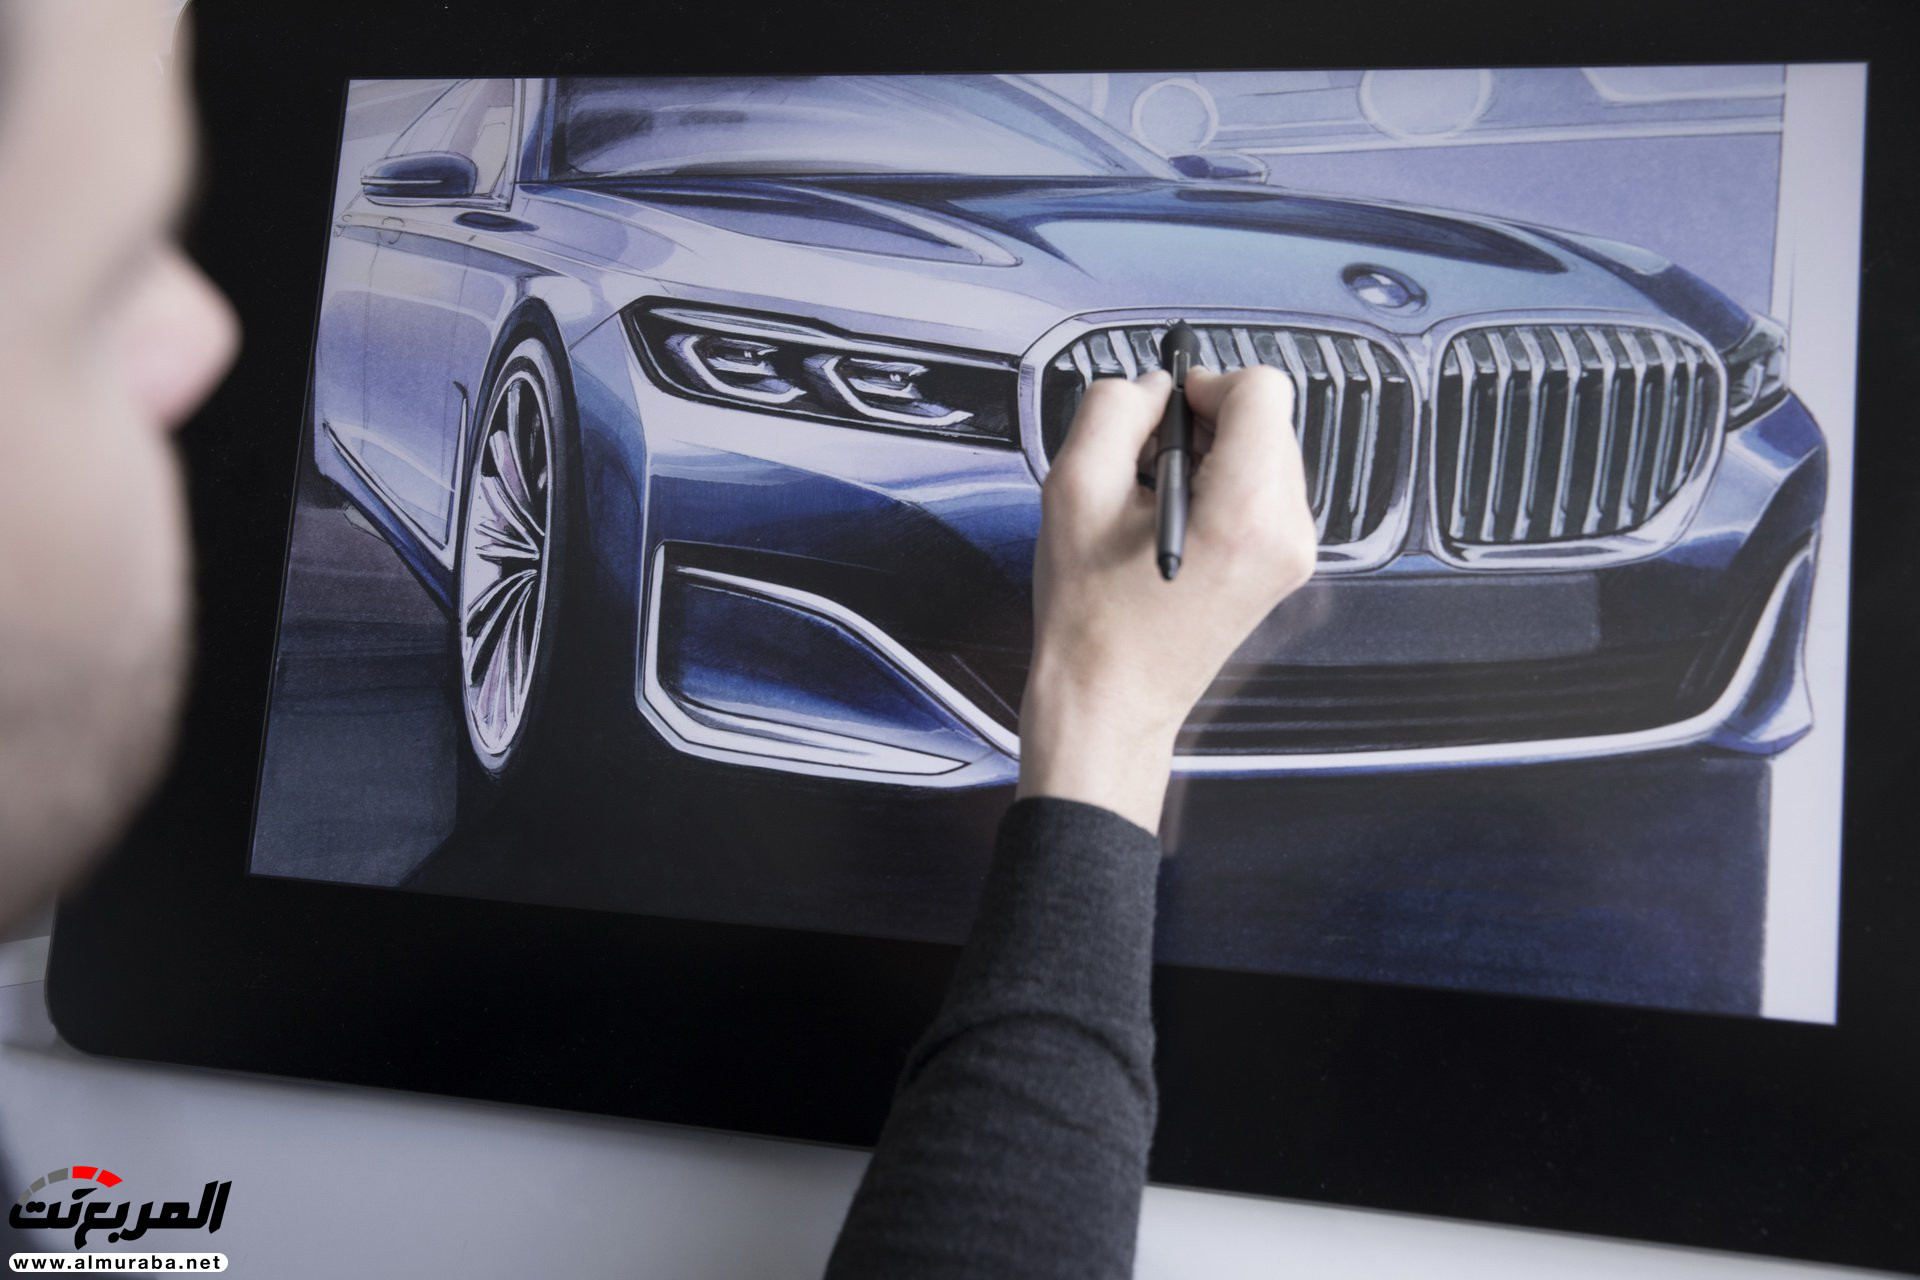 بي ام دبليو الفئة السابعة 2020 المحدثة تكشف نفسها رسمياً "صور ومواصفات" BMW 7 Series 255